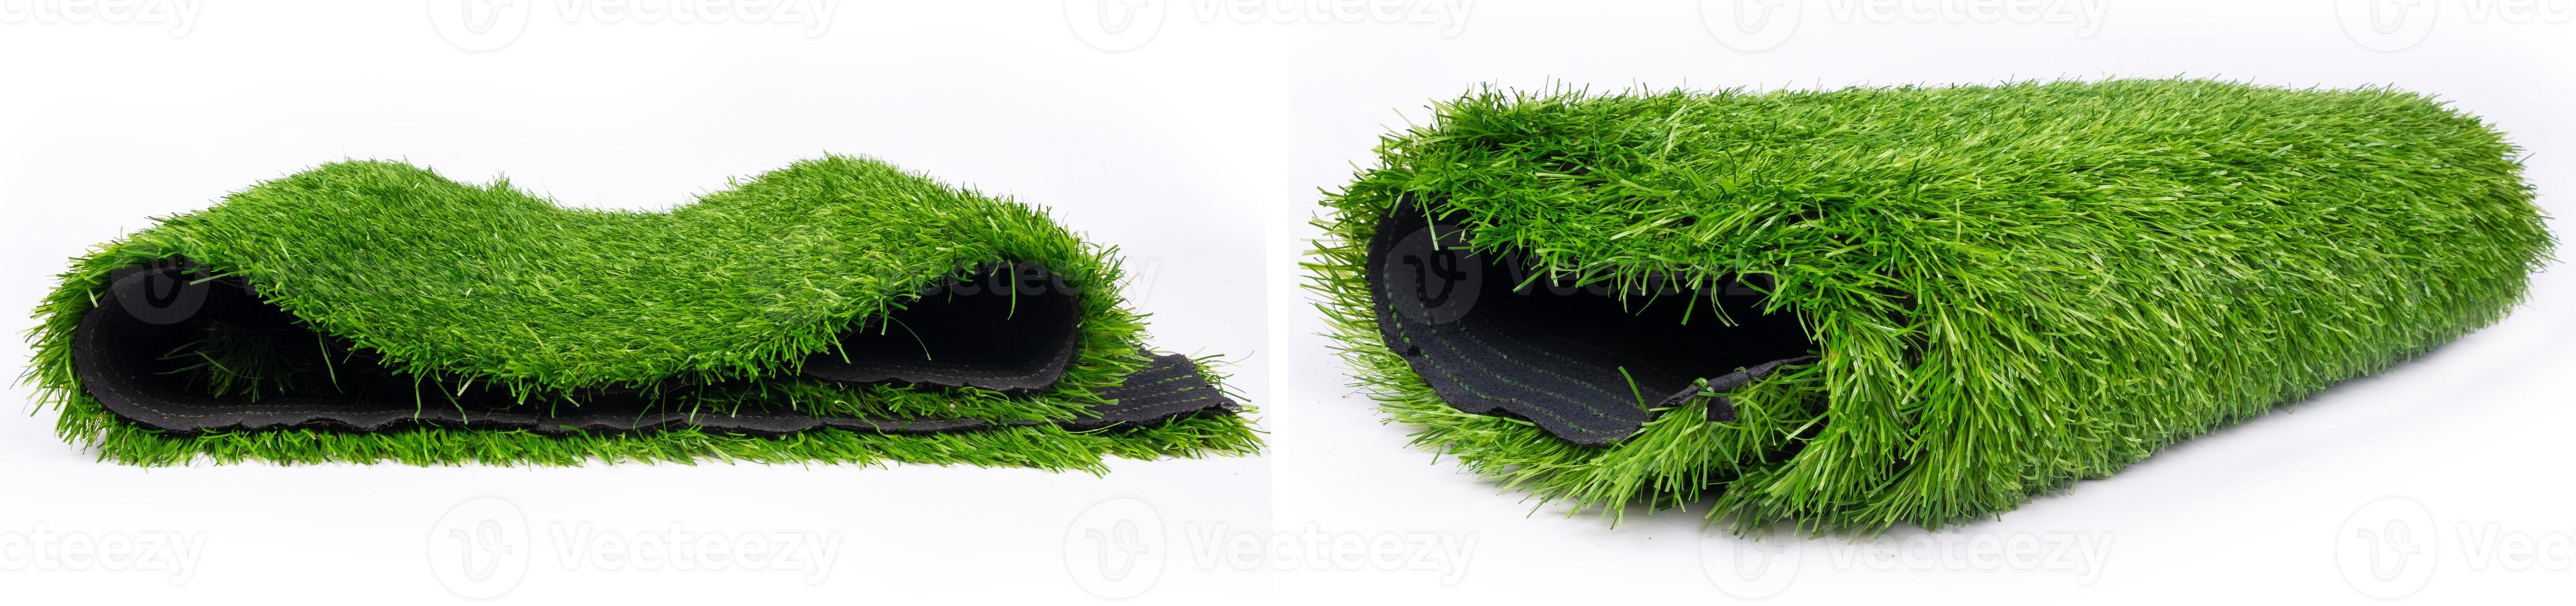 rouleaux de panorama d'herbe verte en plastique, tapis de sol pour terrains de sport photo